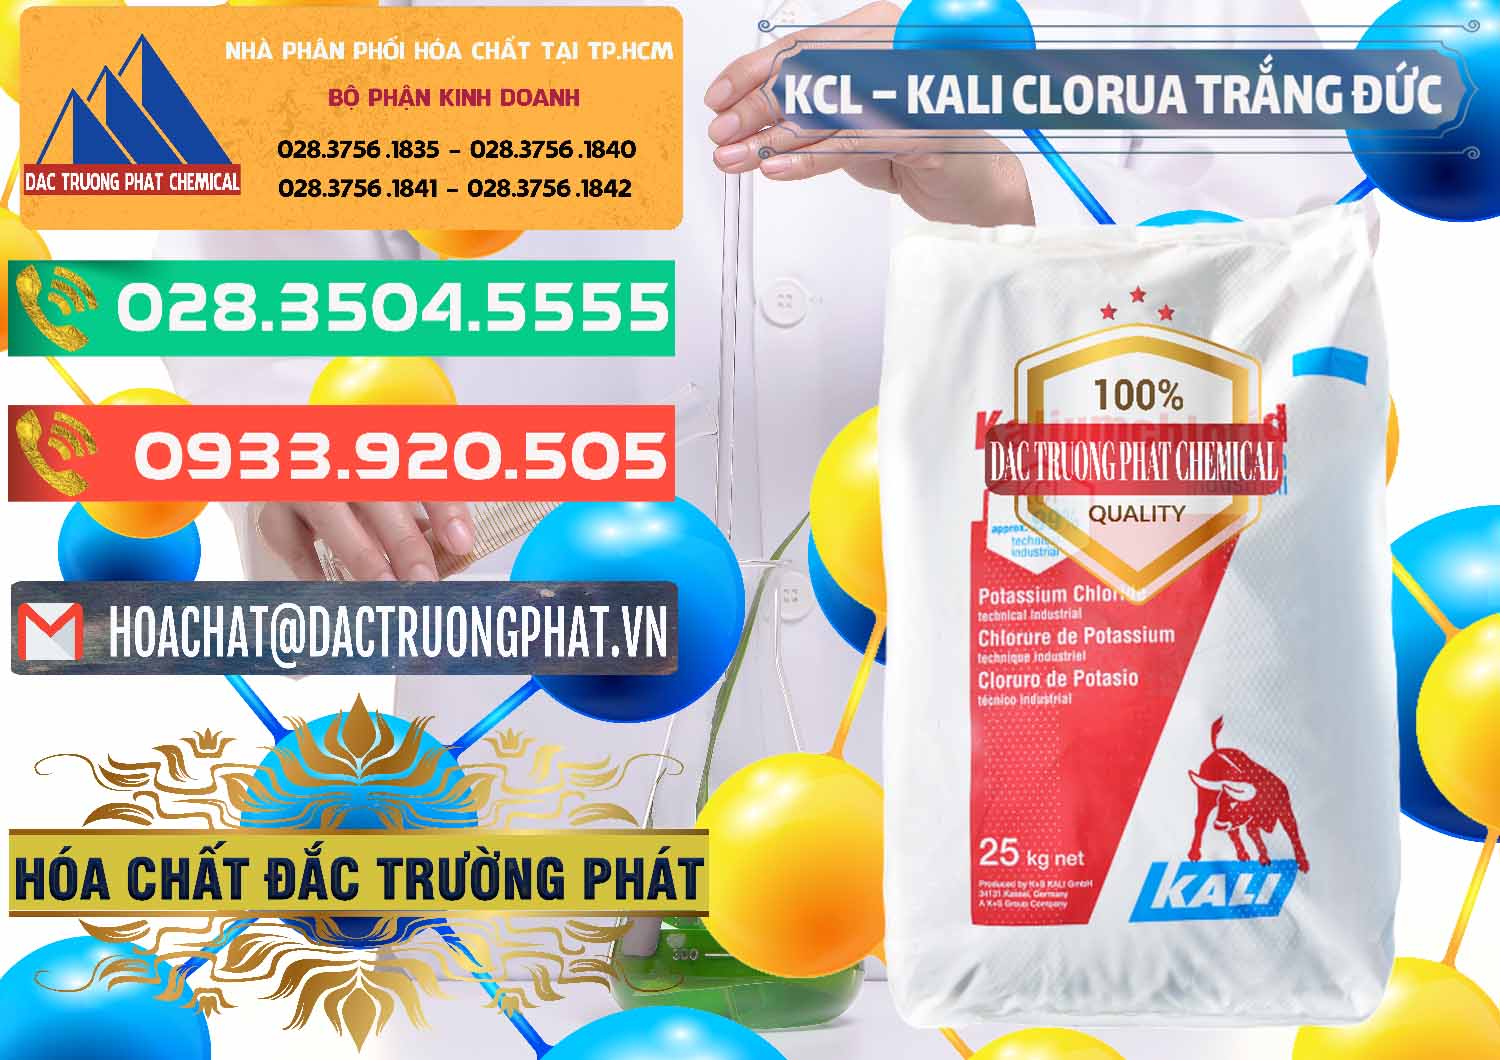 Nơi bán ( phân phối ) KCL – Kali Clorua Trắng Đức Germany - 0086 - Công ty nhập khẩu ( phân phối ) hóa chất tại TP.HCM - congtyhoachat.com.vn